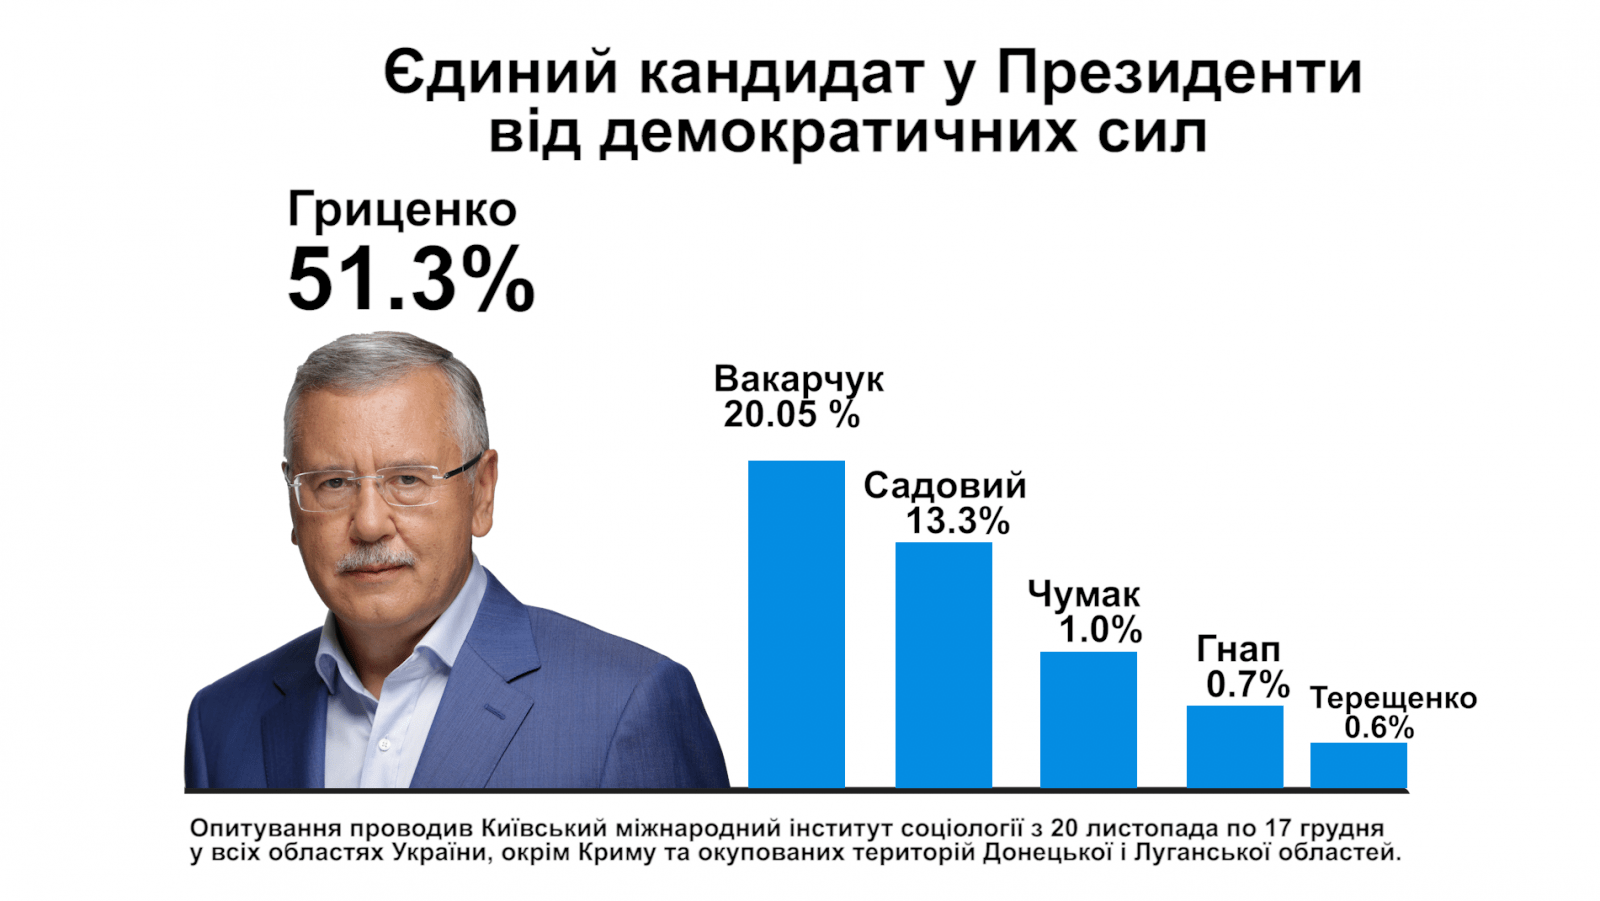 Гриценко став єдиним кандидатом у Президенти від демократичних сил – опитування